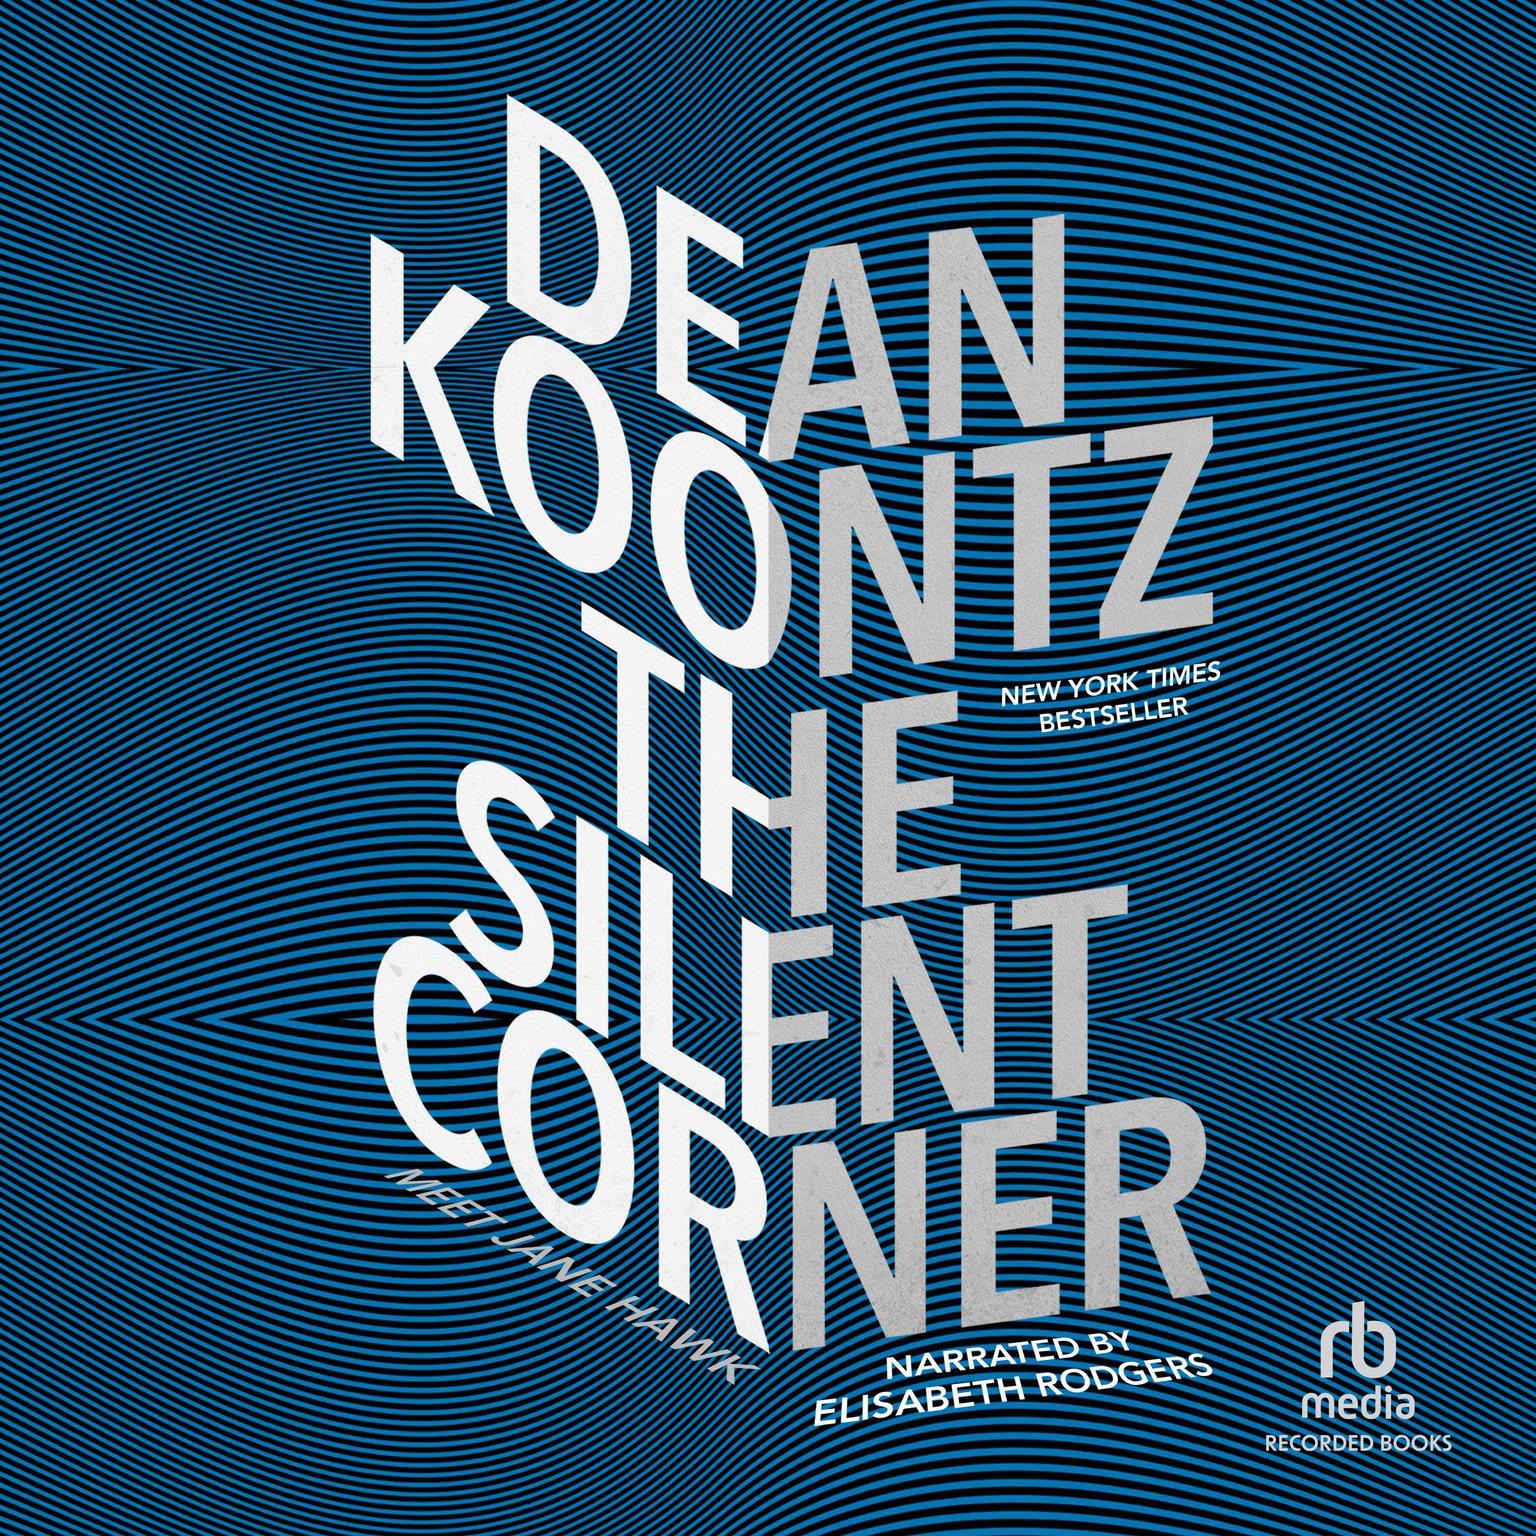 The Silent Corner Audiobook, by Dean Koontz